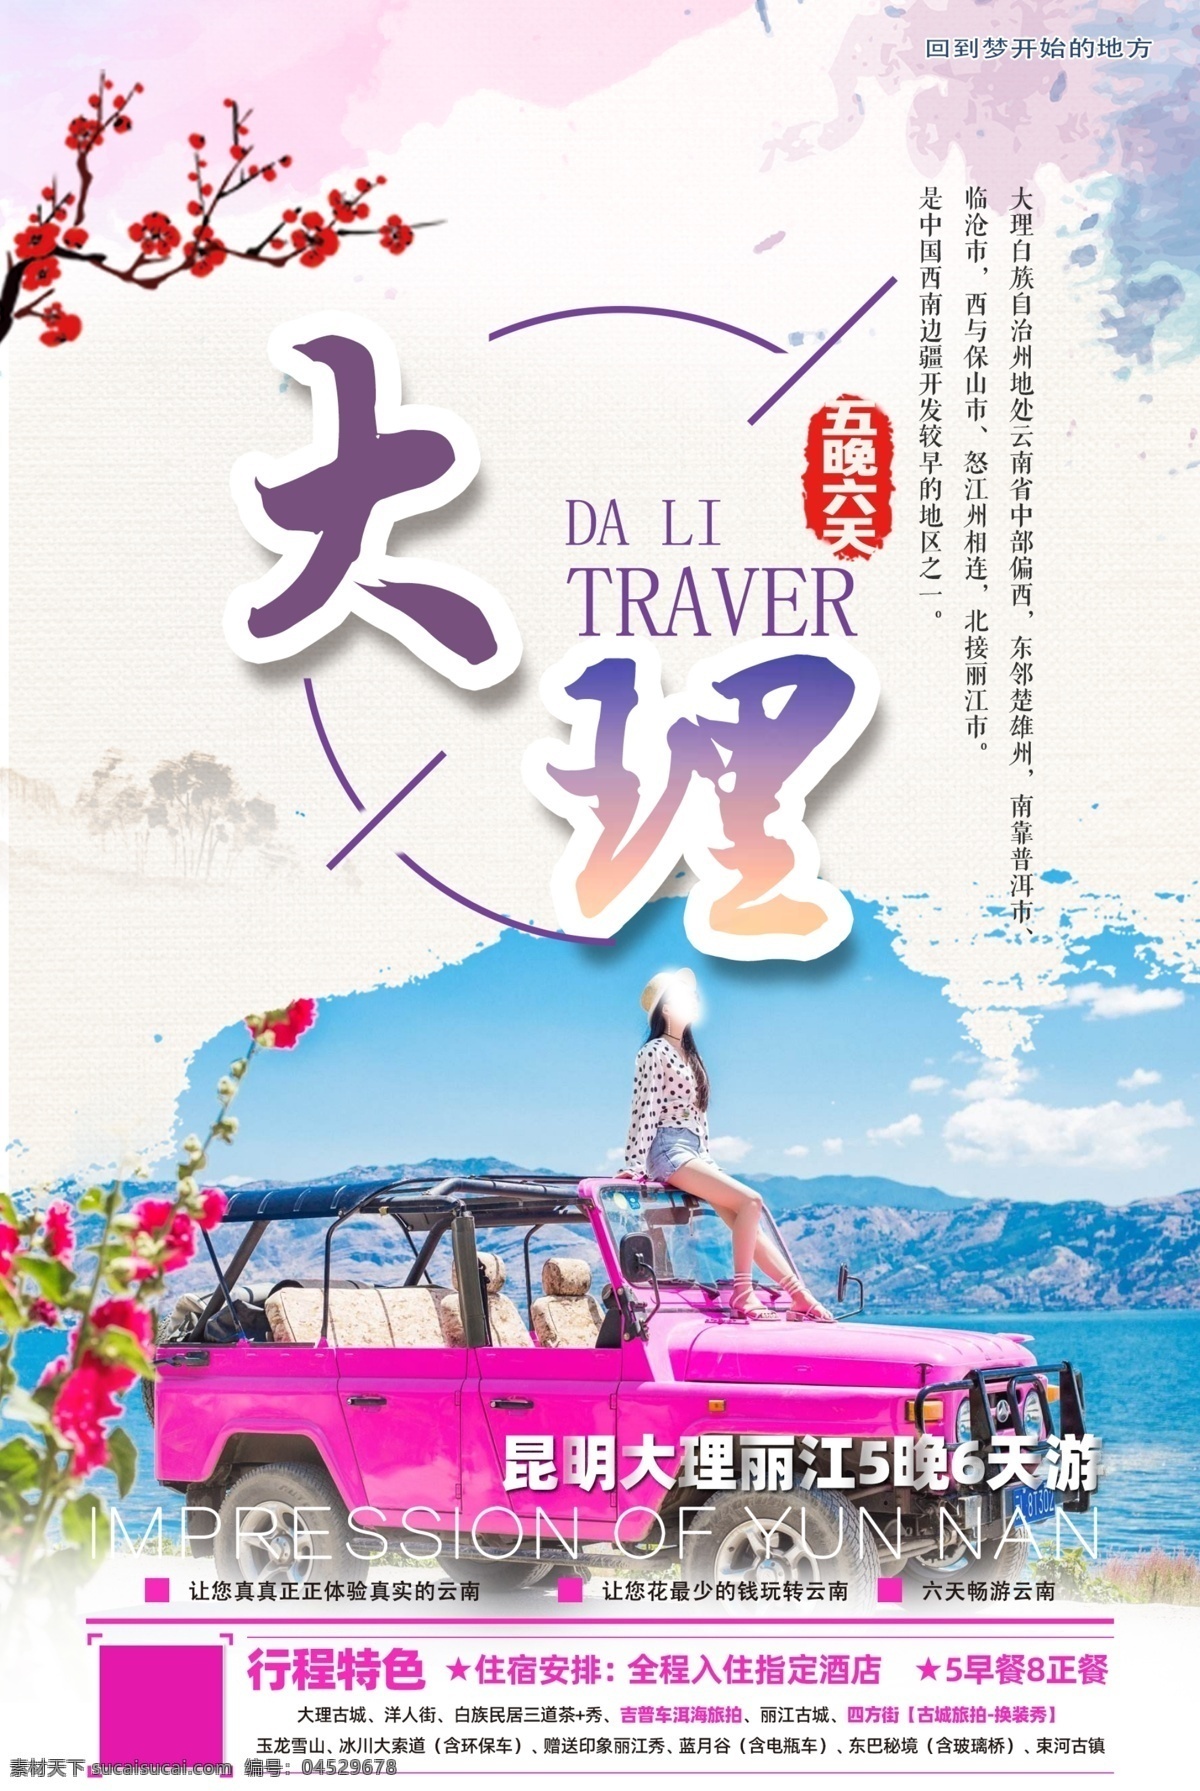 大理 云南 昆明 丽江 jeep车 旅游 泰国 宣传 海边 行走 酒店 海报 紫色 高级感